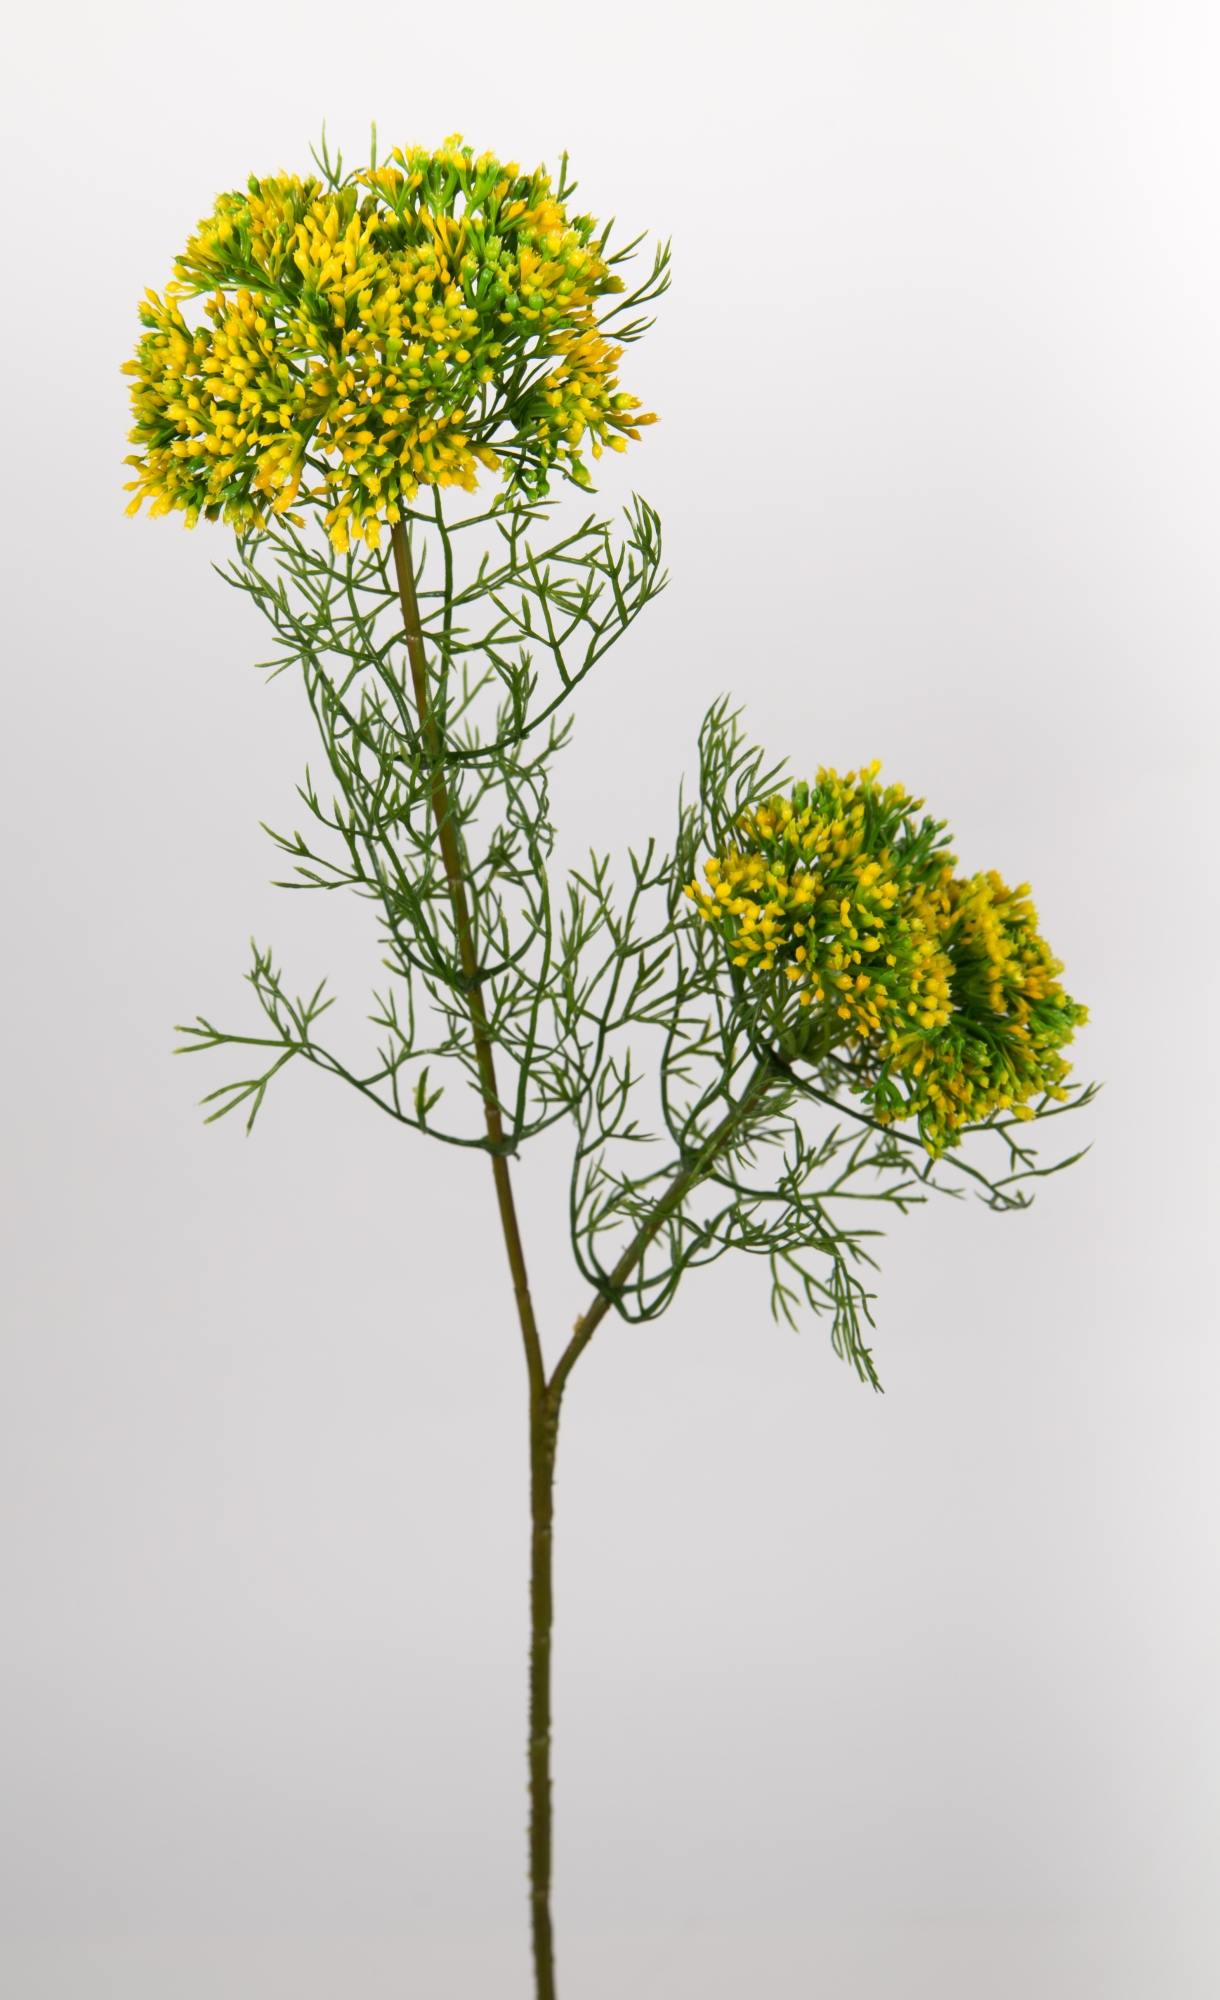 Dillzweig mit Blüten 56cm gelb CG Kunstblumen künstliche Blumen Kunstzweig künstlicher Zweig Kunstpf